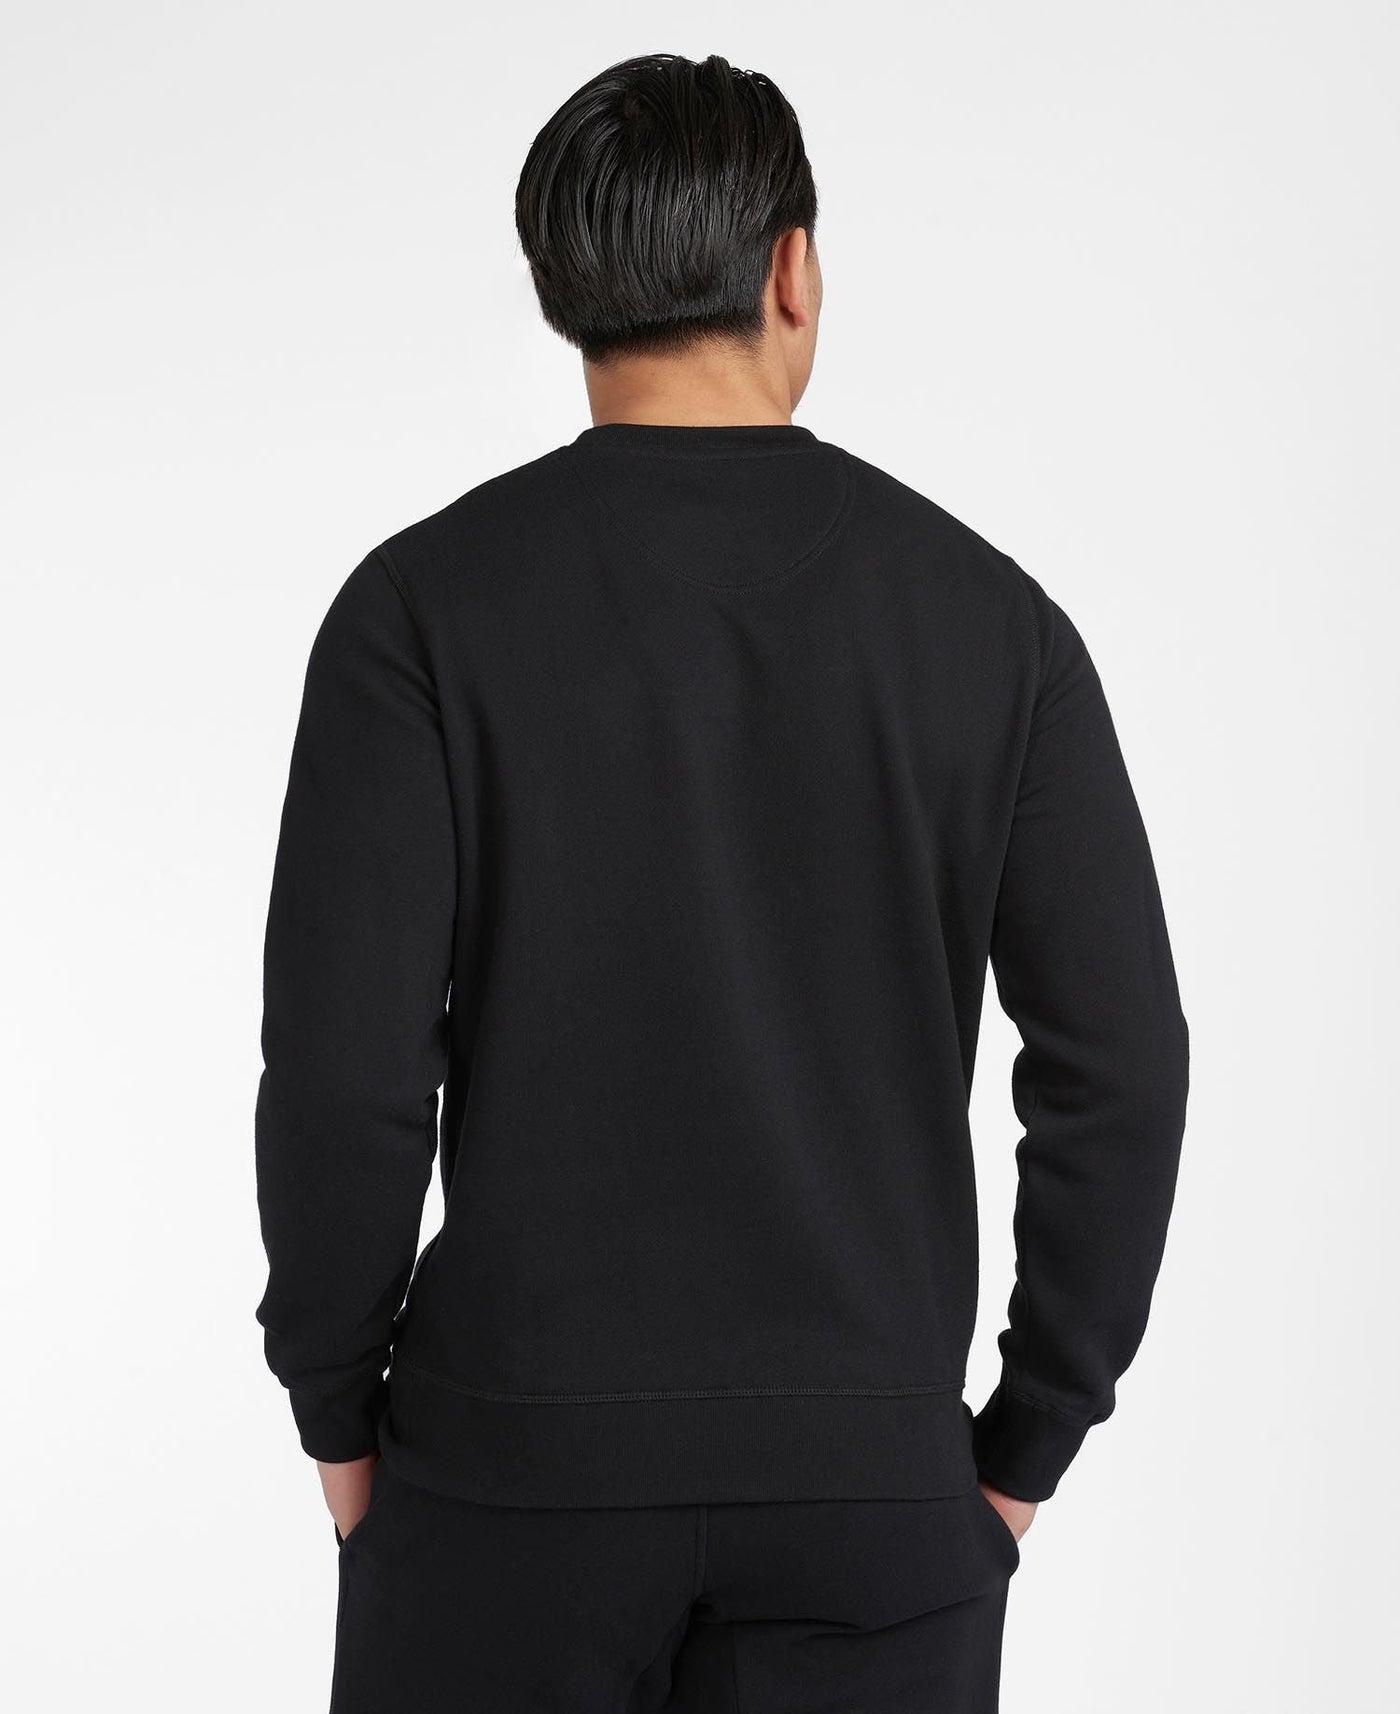 Barbour Sweatshirt Large Logo Noir - Lothaire boutiques